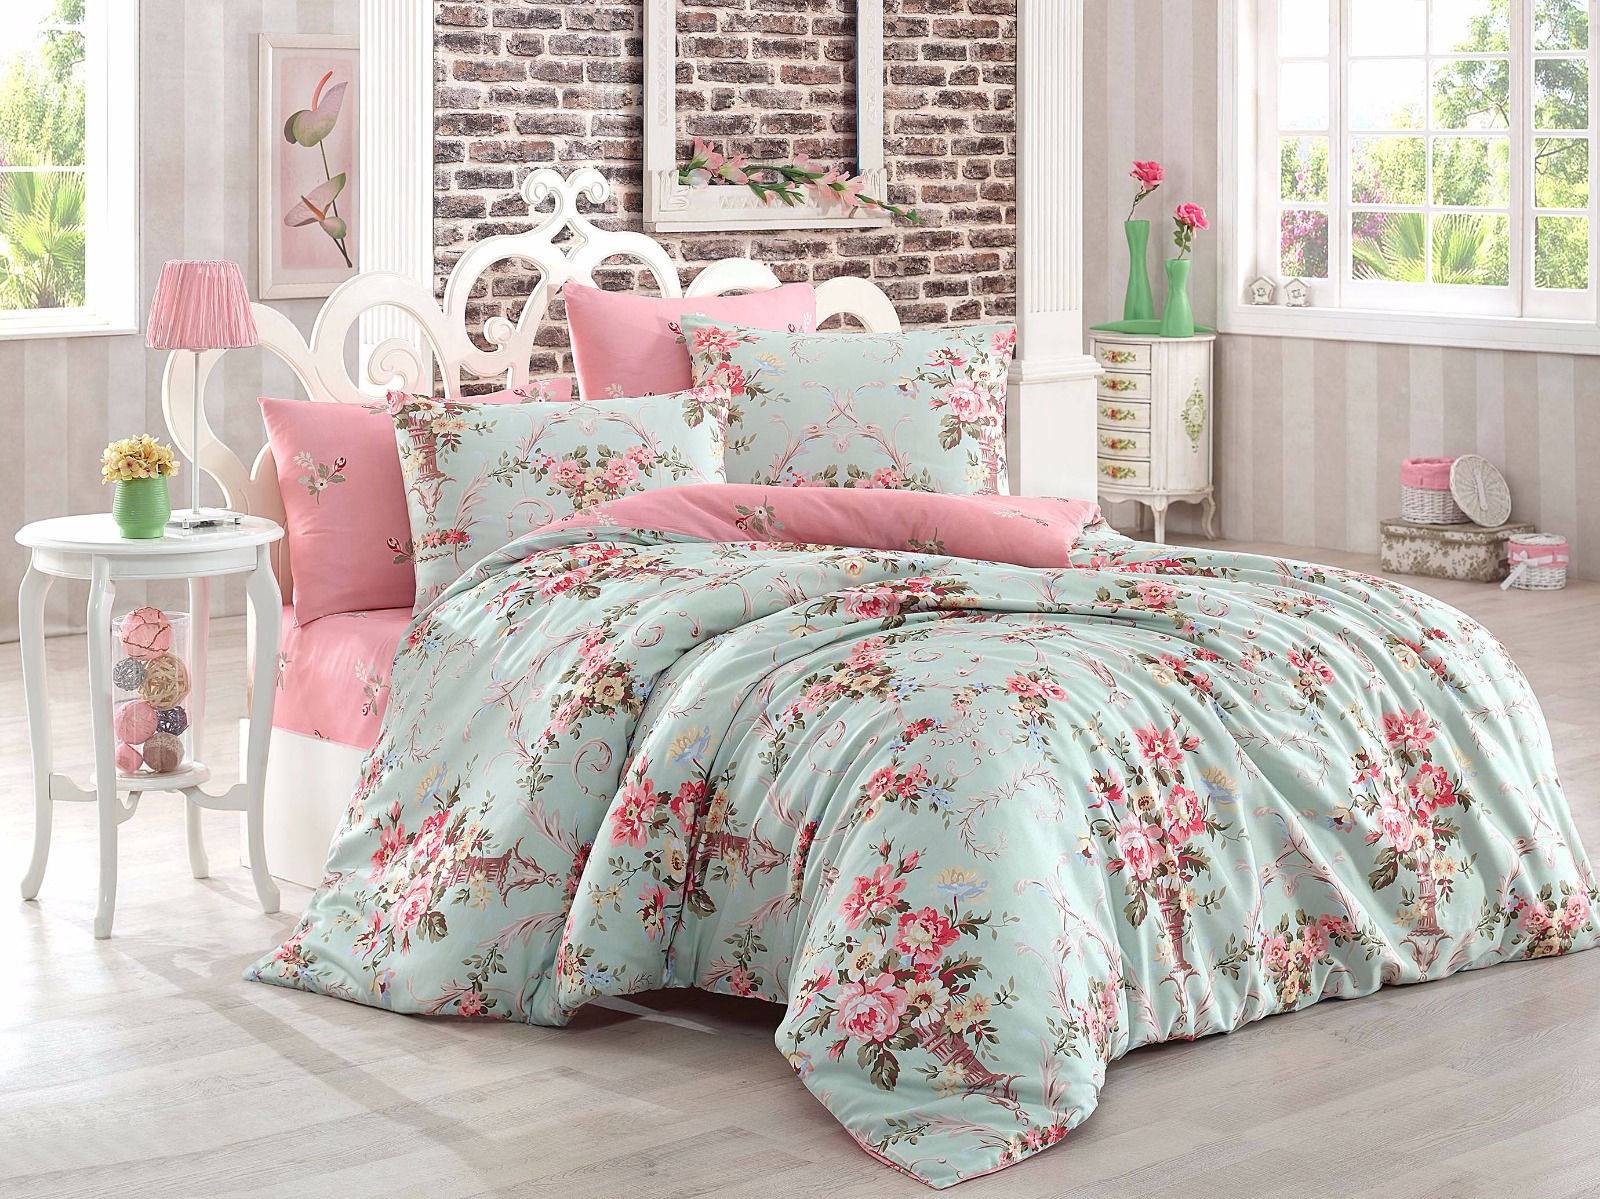 Parure de lit Antoinette 200x220cm avec drap plat 220x240cm et 2 taies d'oreiller 50x70cm Tissu Motif floral vert menthe et rose